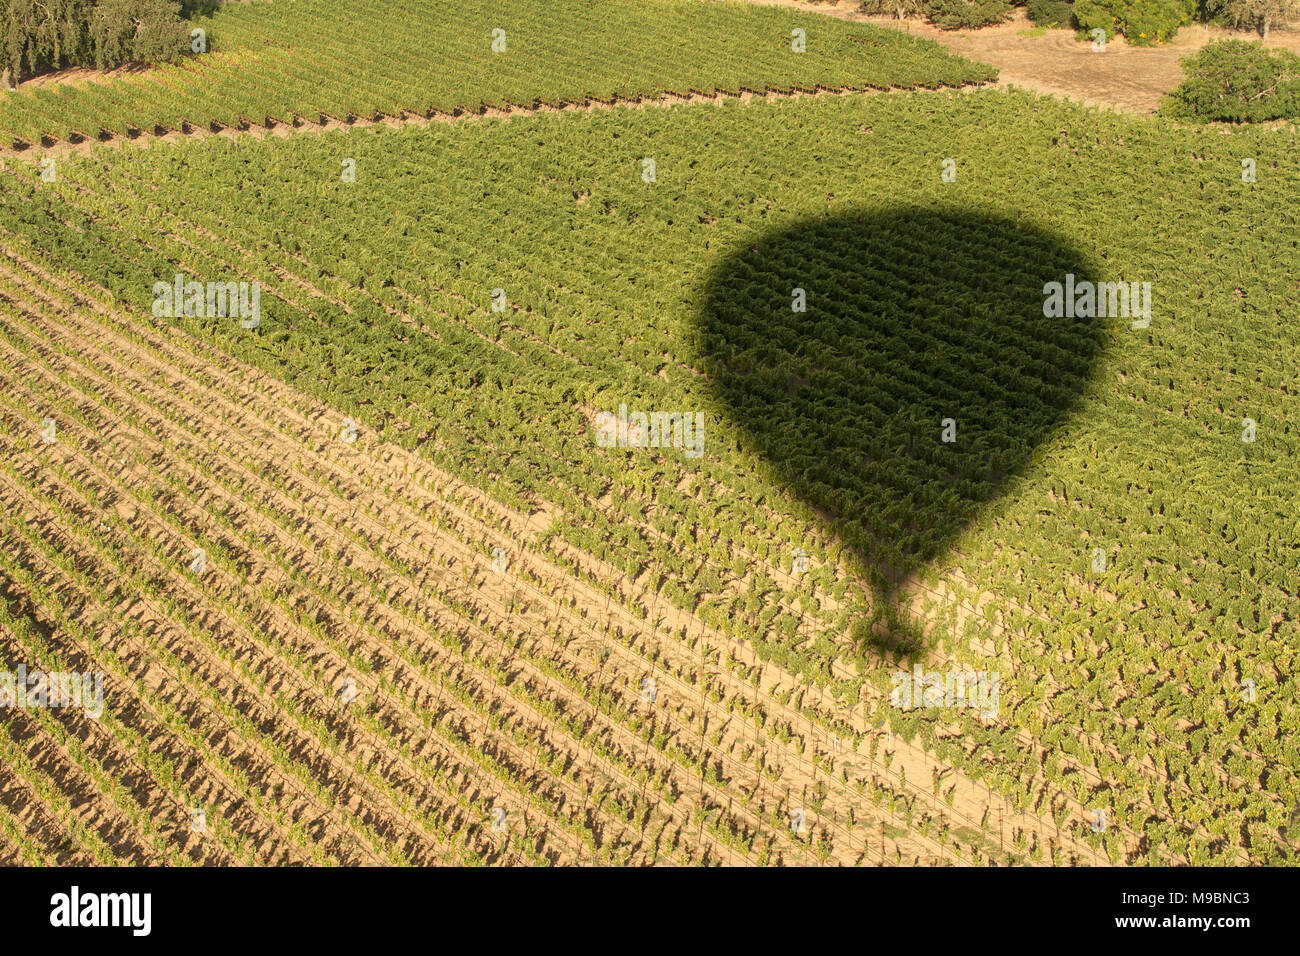 L'ombre d'un ballon à air chaud à l'égard des raisins dans une vigne Banque D'Images